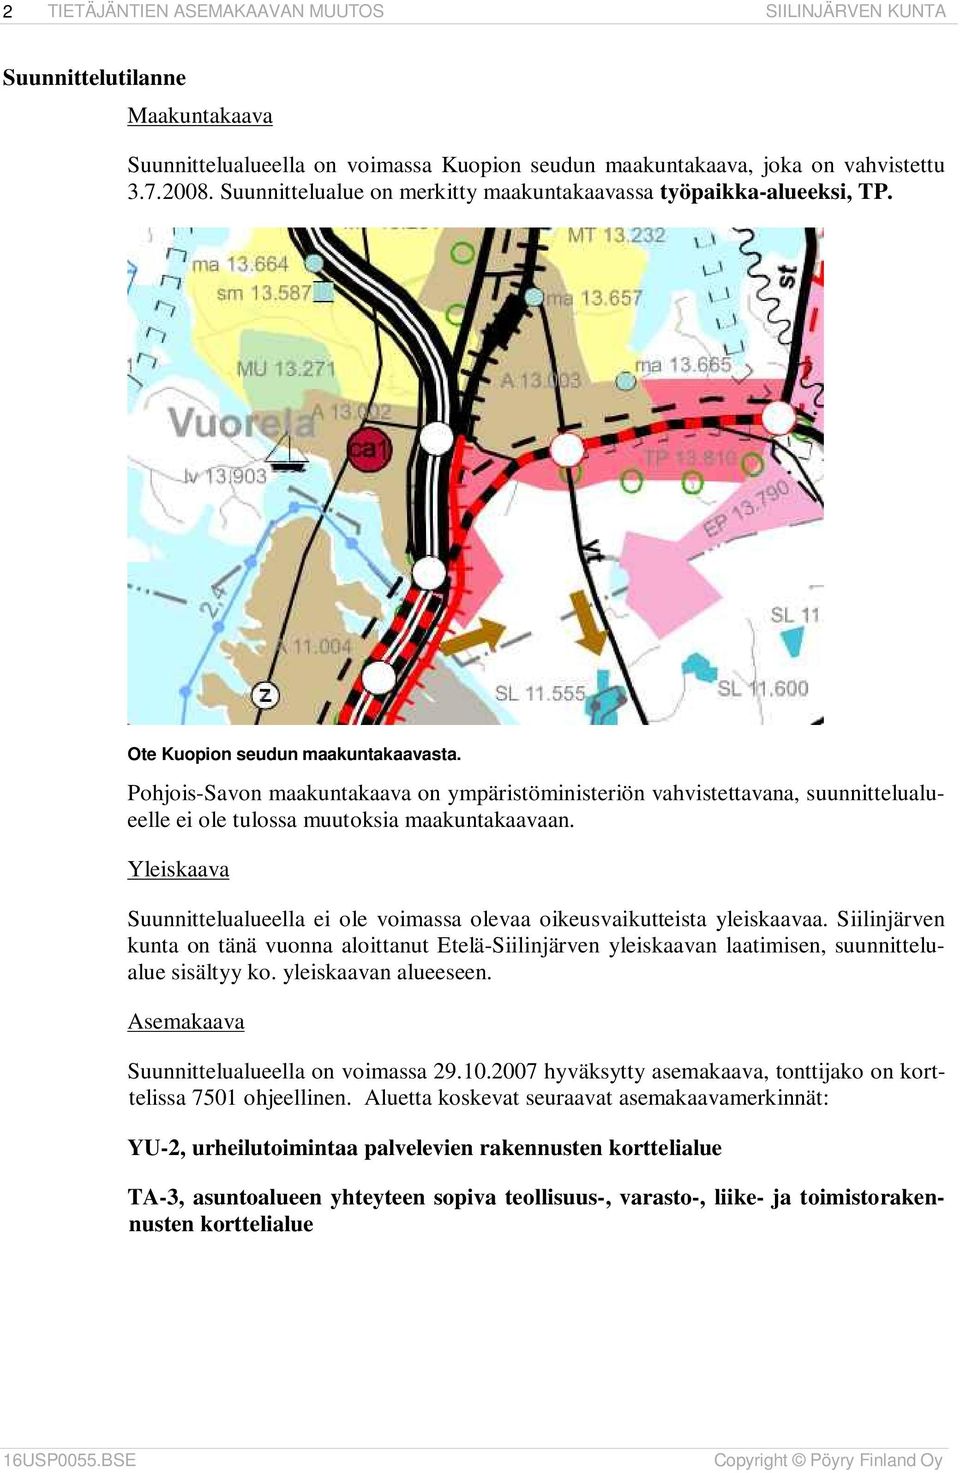 Pohjois-Savon maakuntakaava on ympäristöministeriön vahvistettavana, suunnittelualueelle ei ole tulossa muutoksia maakuntakaavaan.